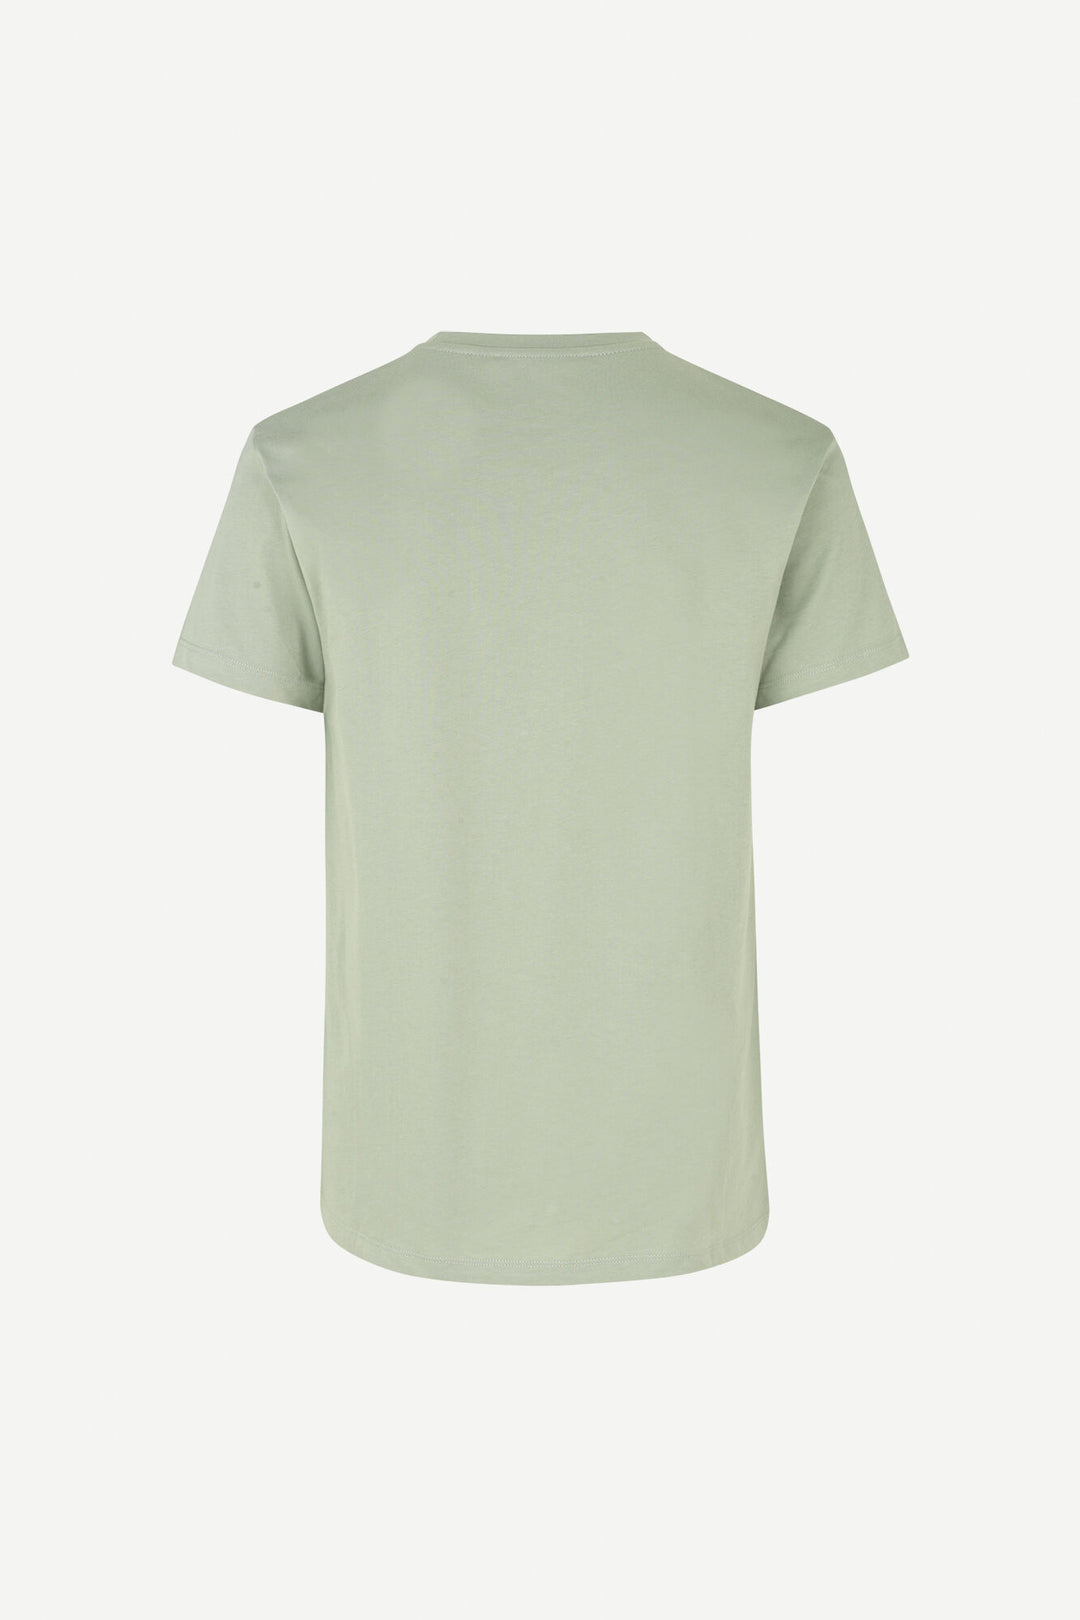 Kronos Round Neck T-Shirt Seagrass